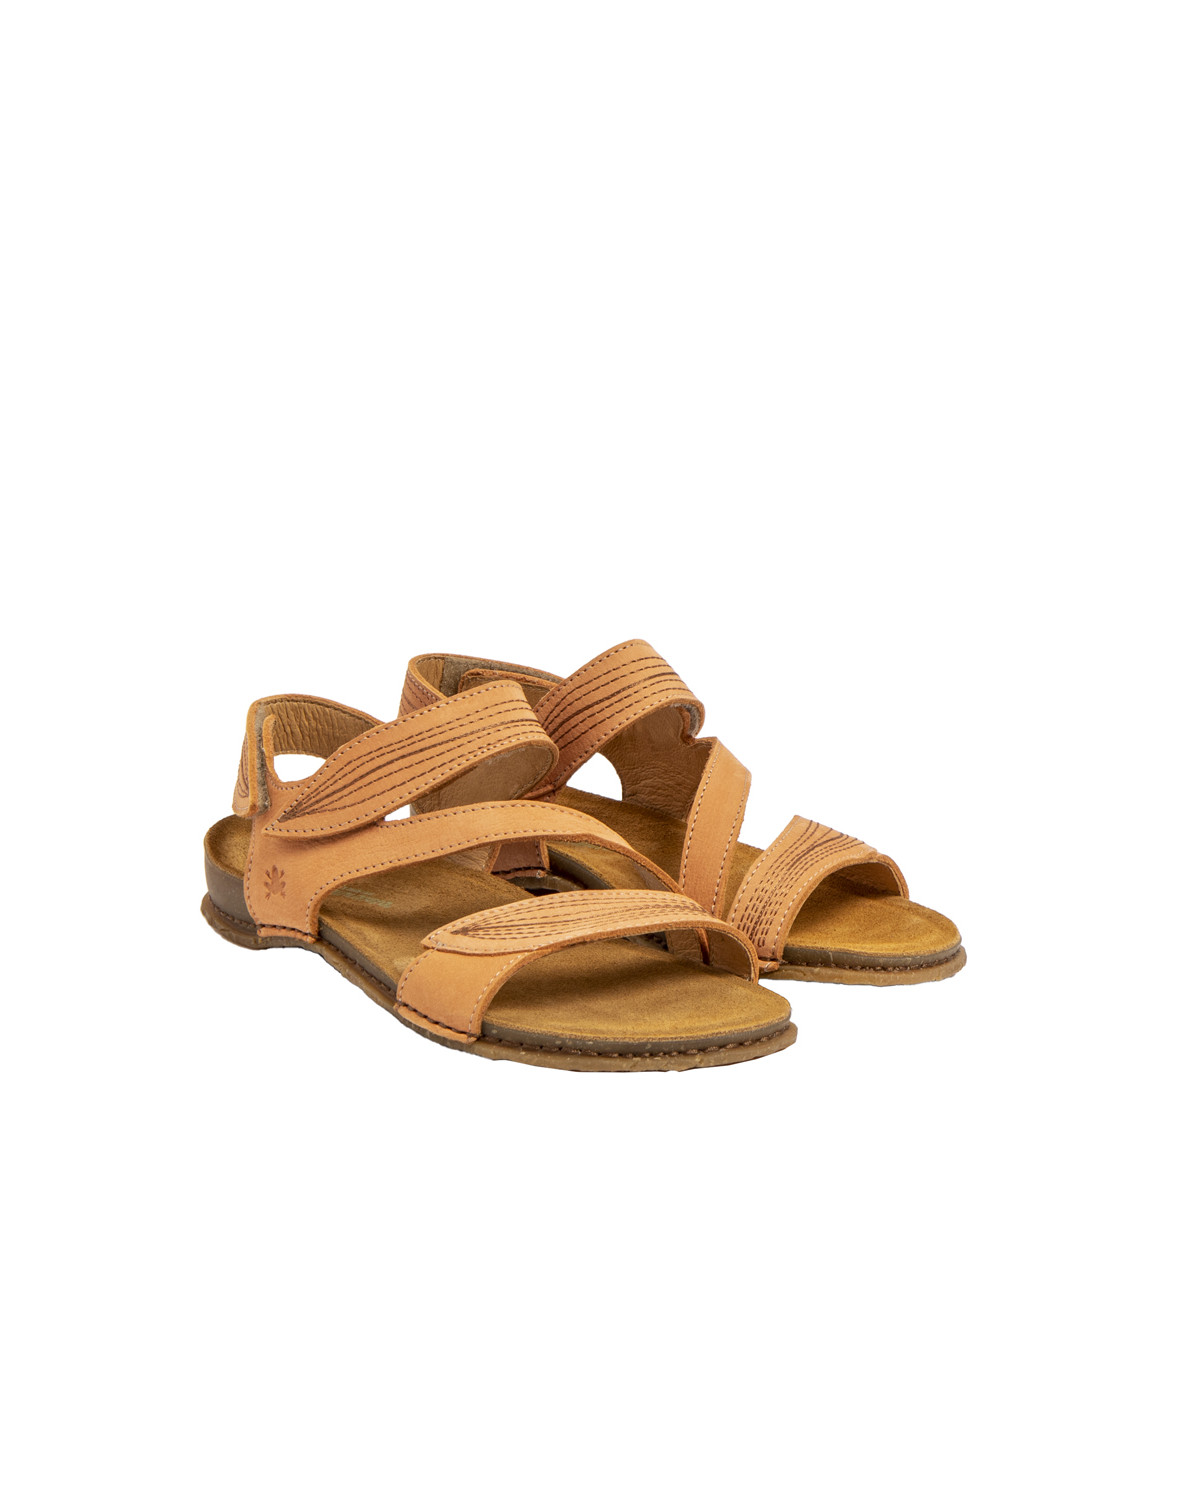 Sandales confortables plates en cuir suédé à scratch - Jaune - El naturalista